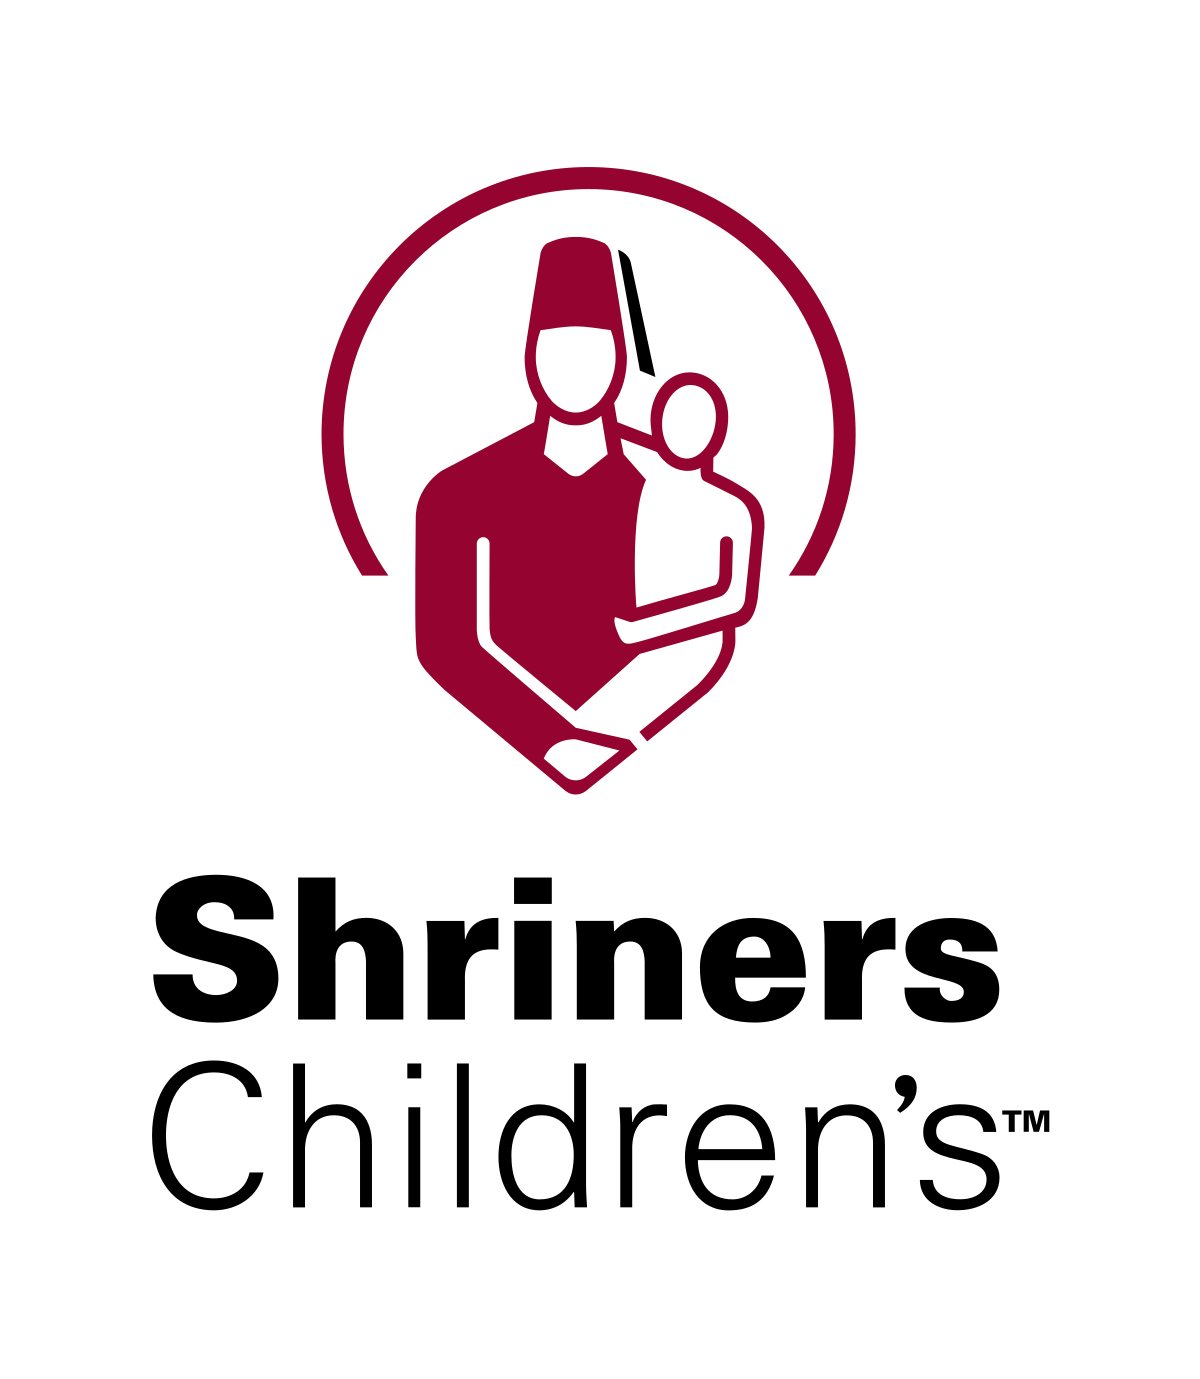 Shriner's Children's